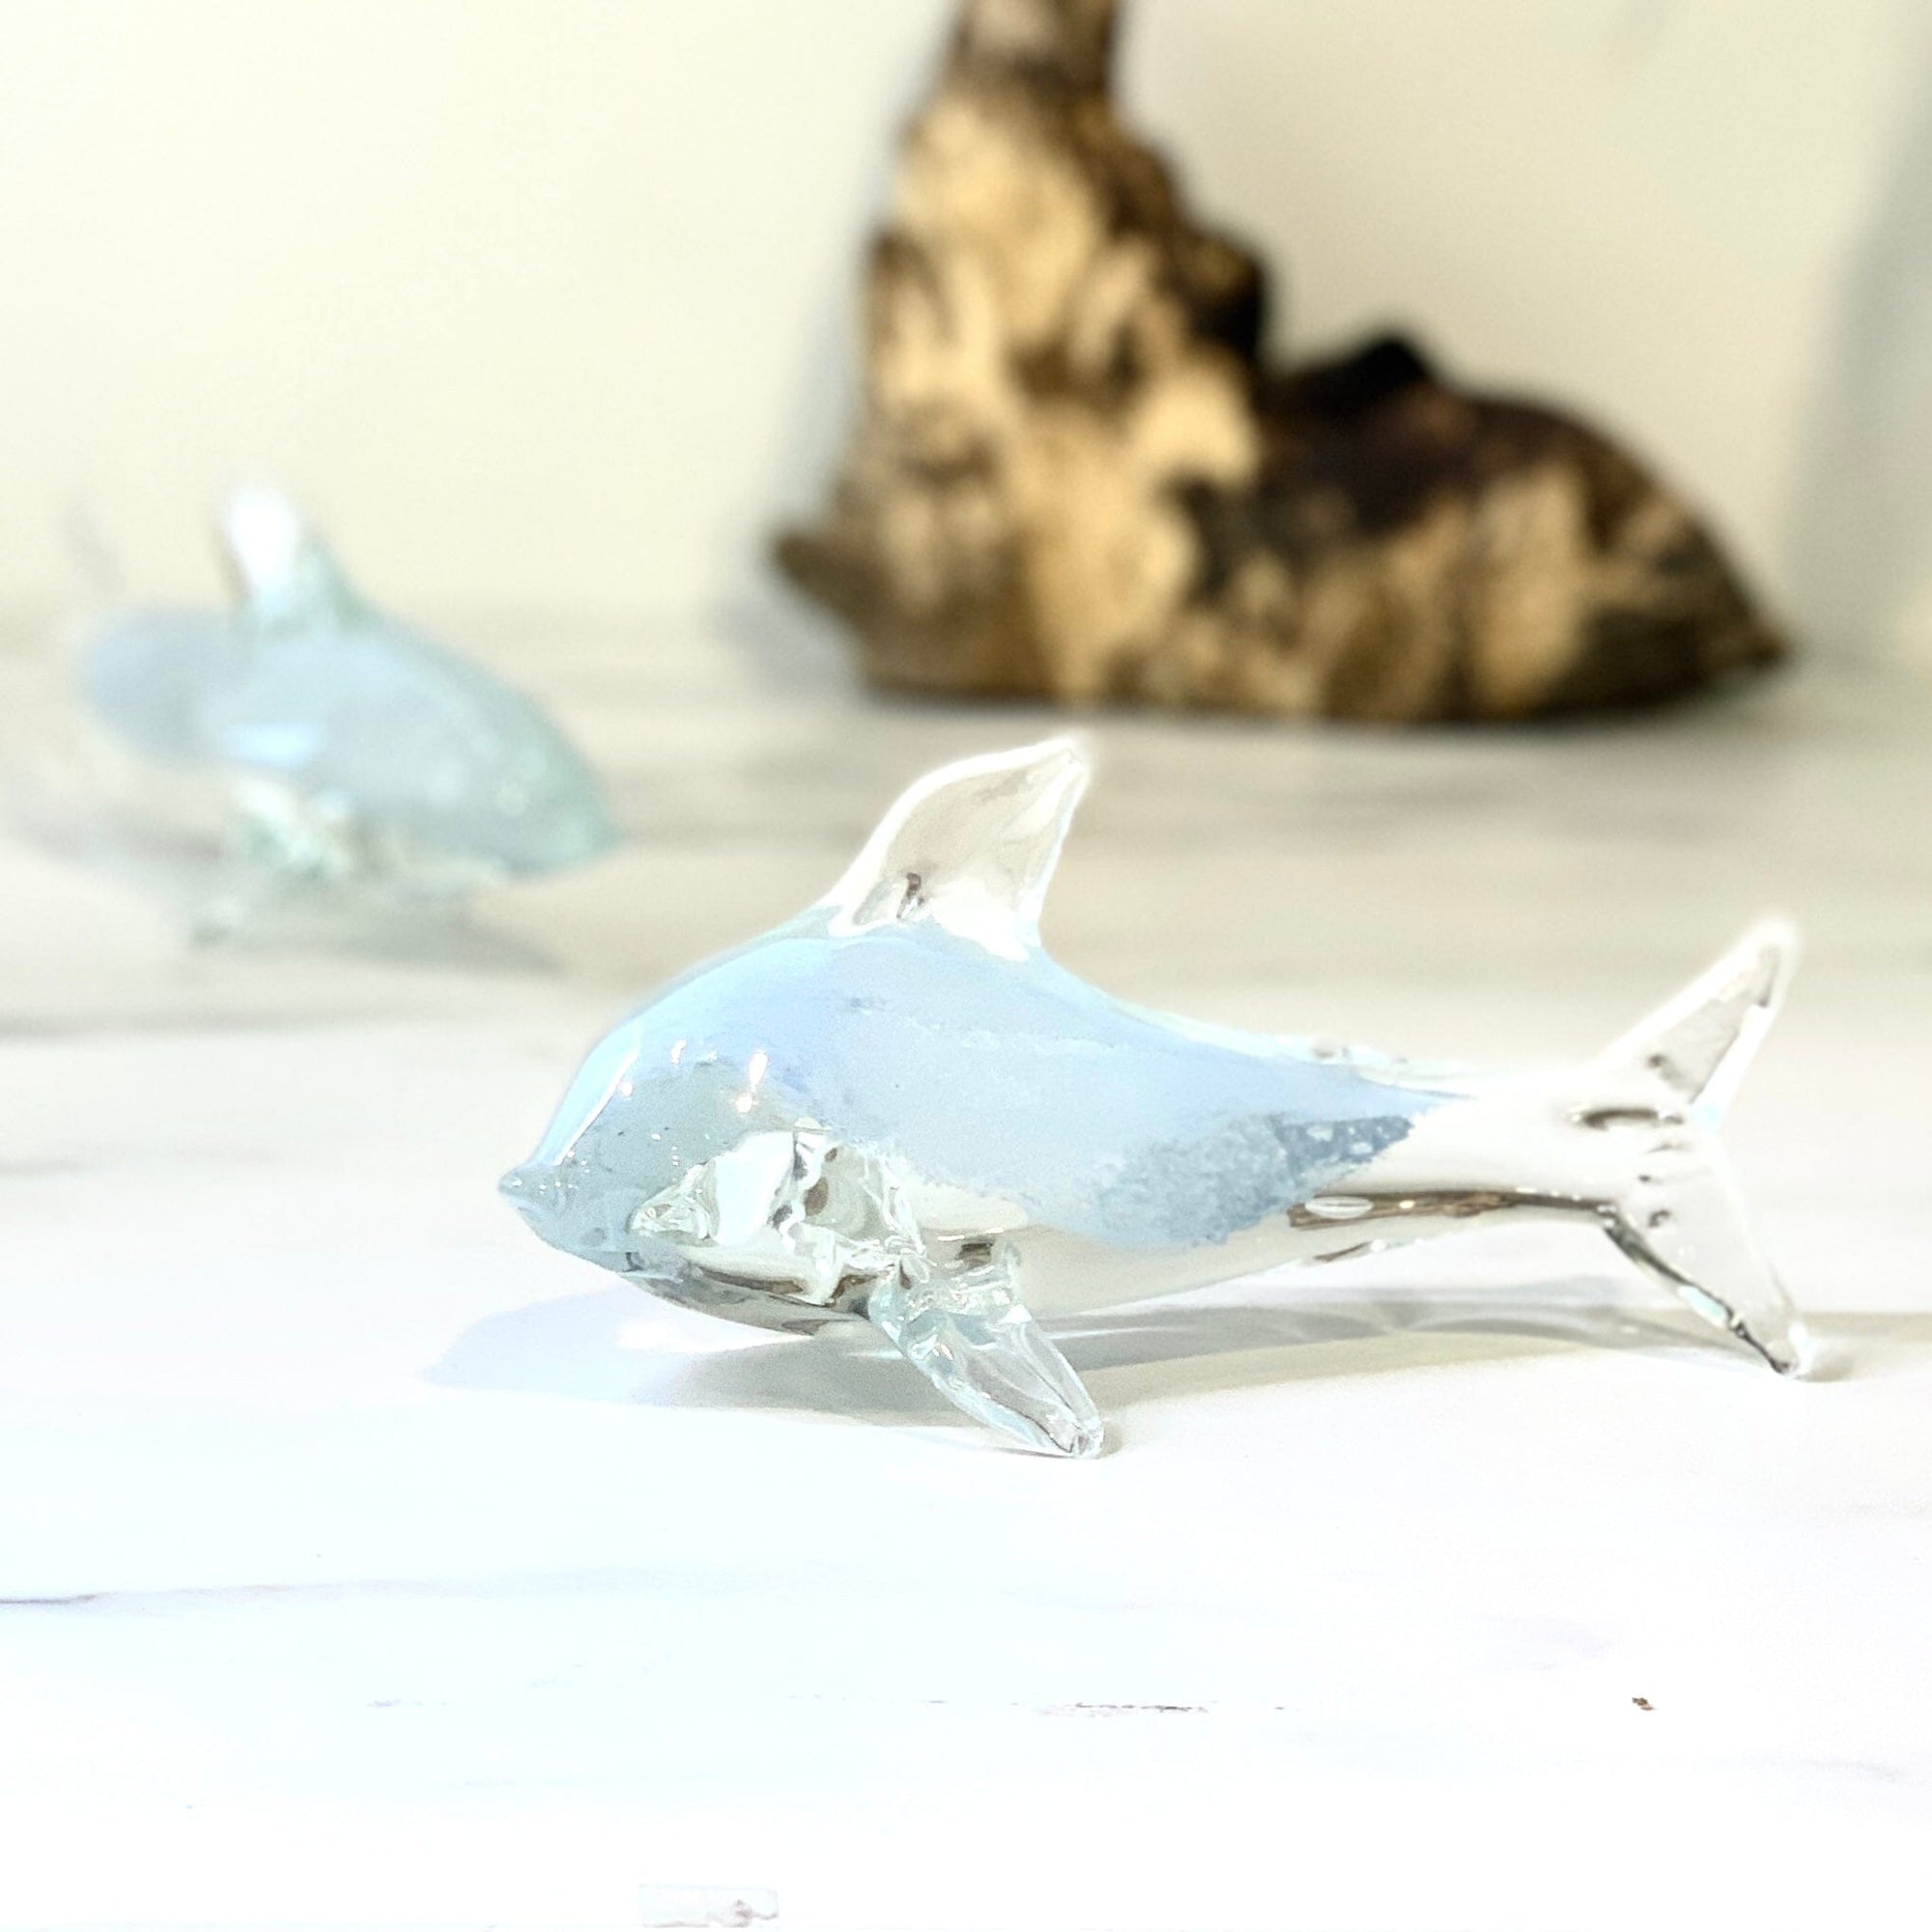 Glass Shark Paperweight Decor Chesapeake Bay 